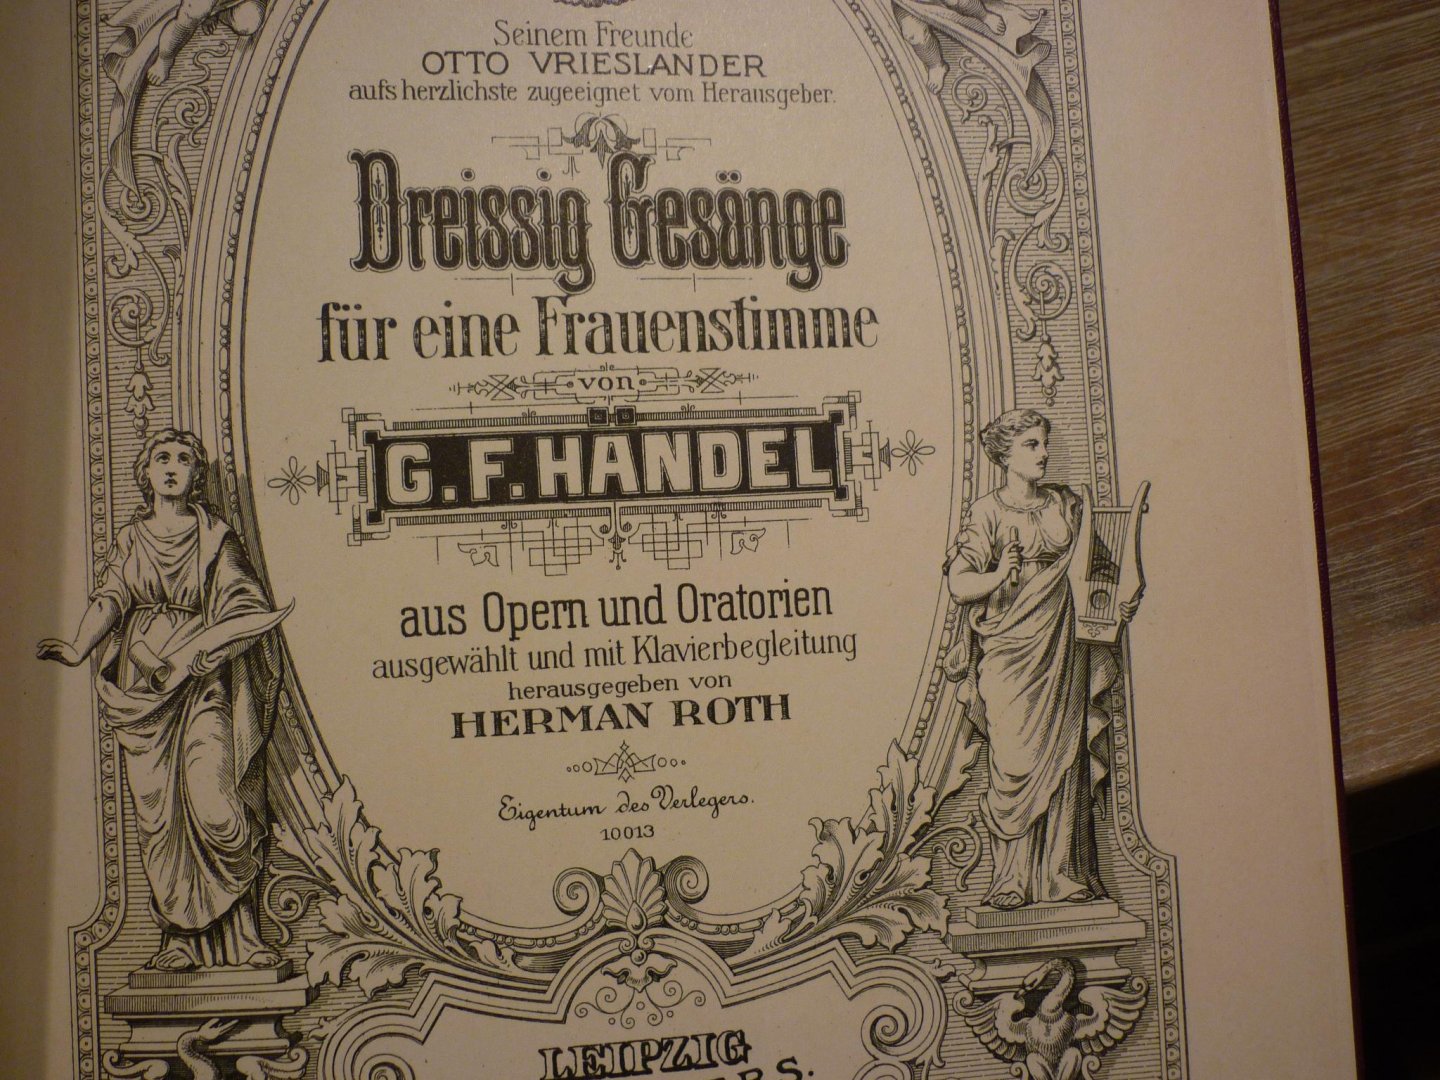 Handel; Georg Friedrich (1685-1759) - 30 Gesänge aus Opern und Oratorien für eine Frauenstimme; voor Zangstem, piano - Piano-uittreksel (Herman Roth)